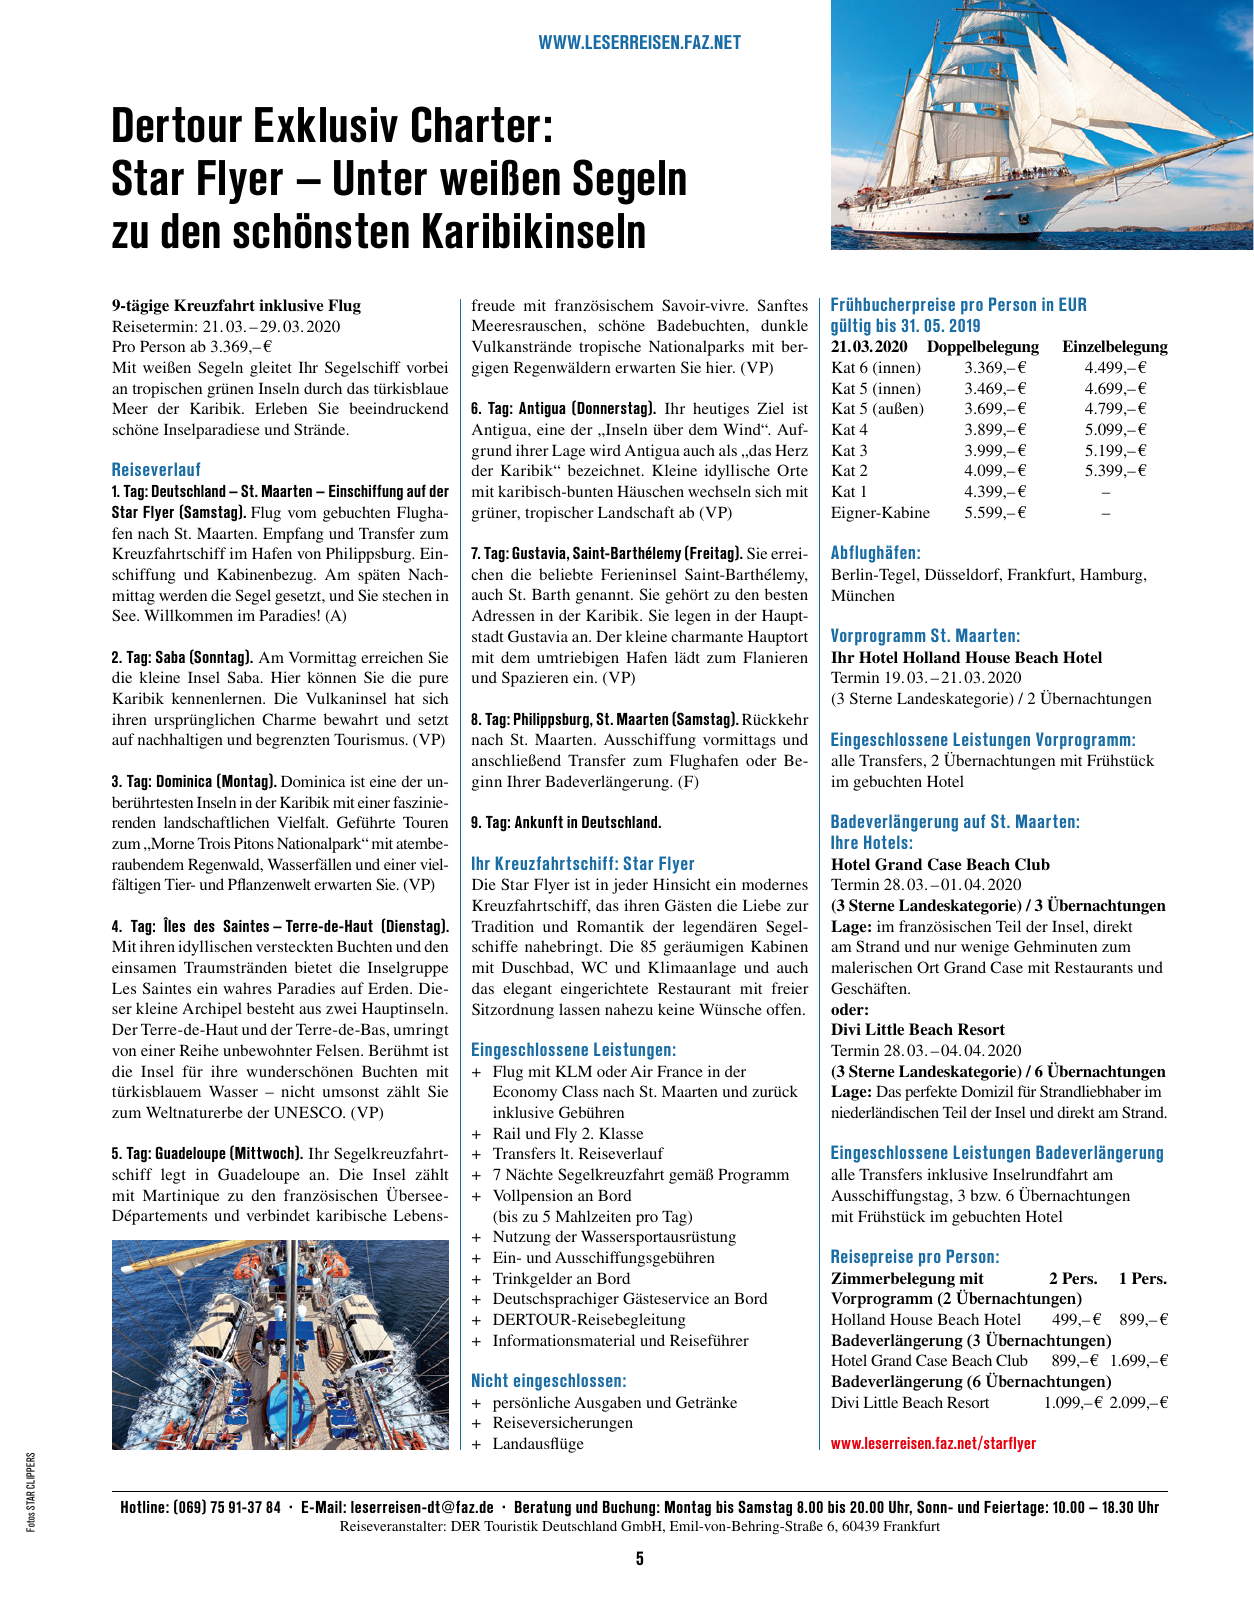 Vorschau F.A.Z. Leserreisen Katalog Traum- und Schiffsreisen Seite 5